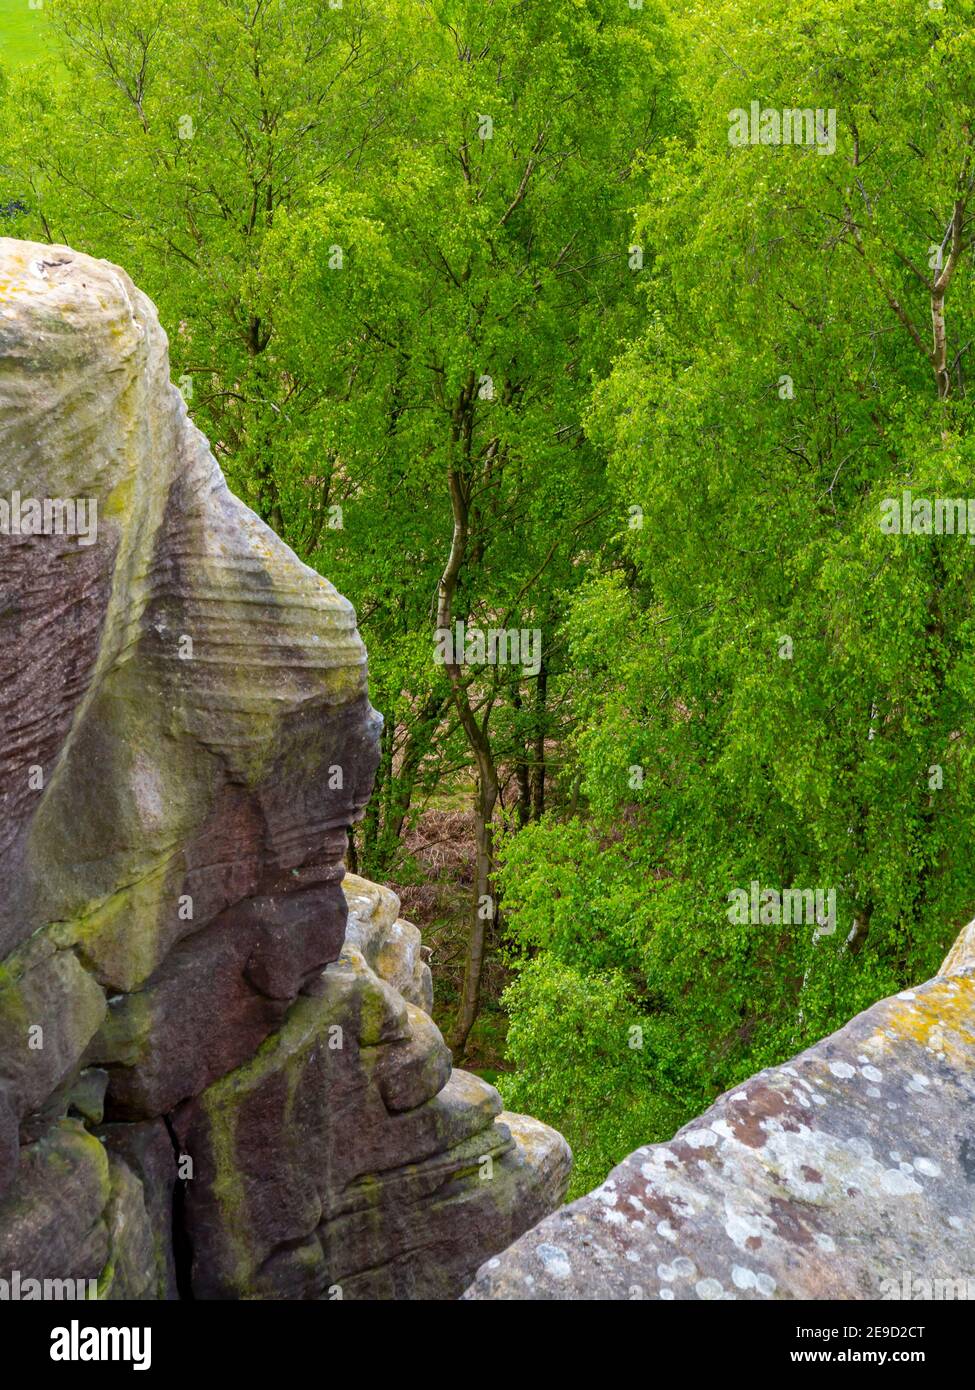 Paysage du début de l'été avec des bouleaux argentés et des rochers à Birchen Edge près de Baslow dans le parc national de Peak District Derbyshire Dales Angleterre Royaume-Uni Banque D'Images